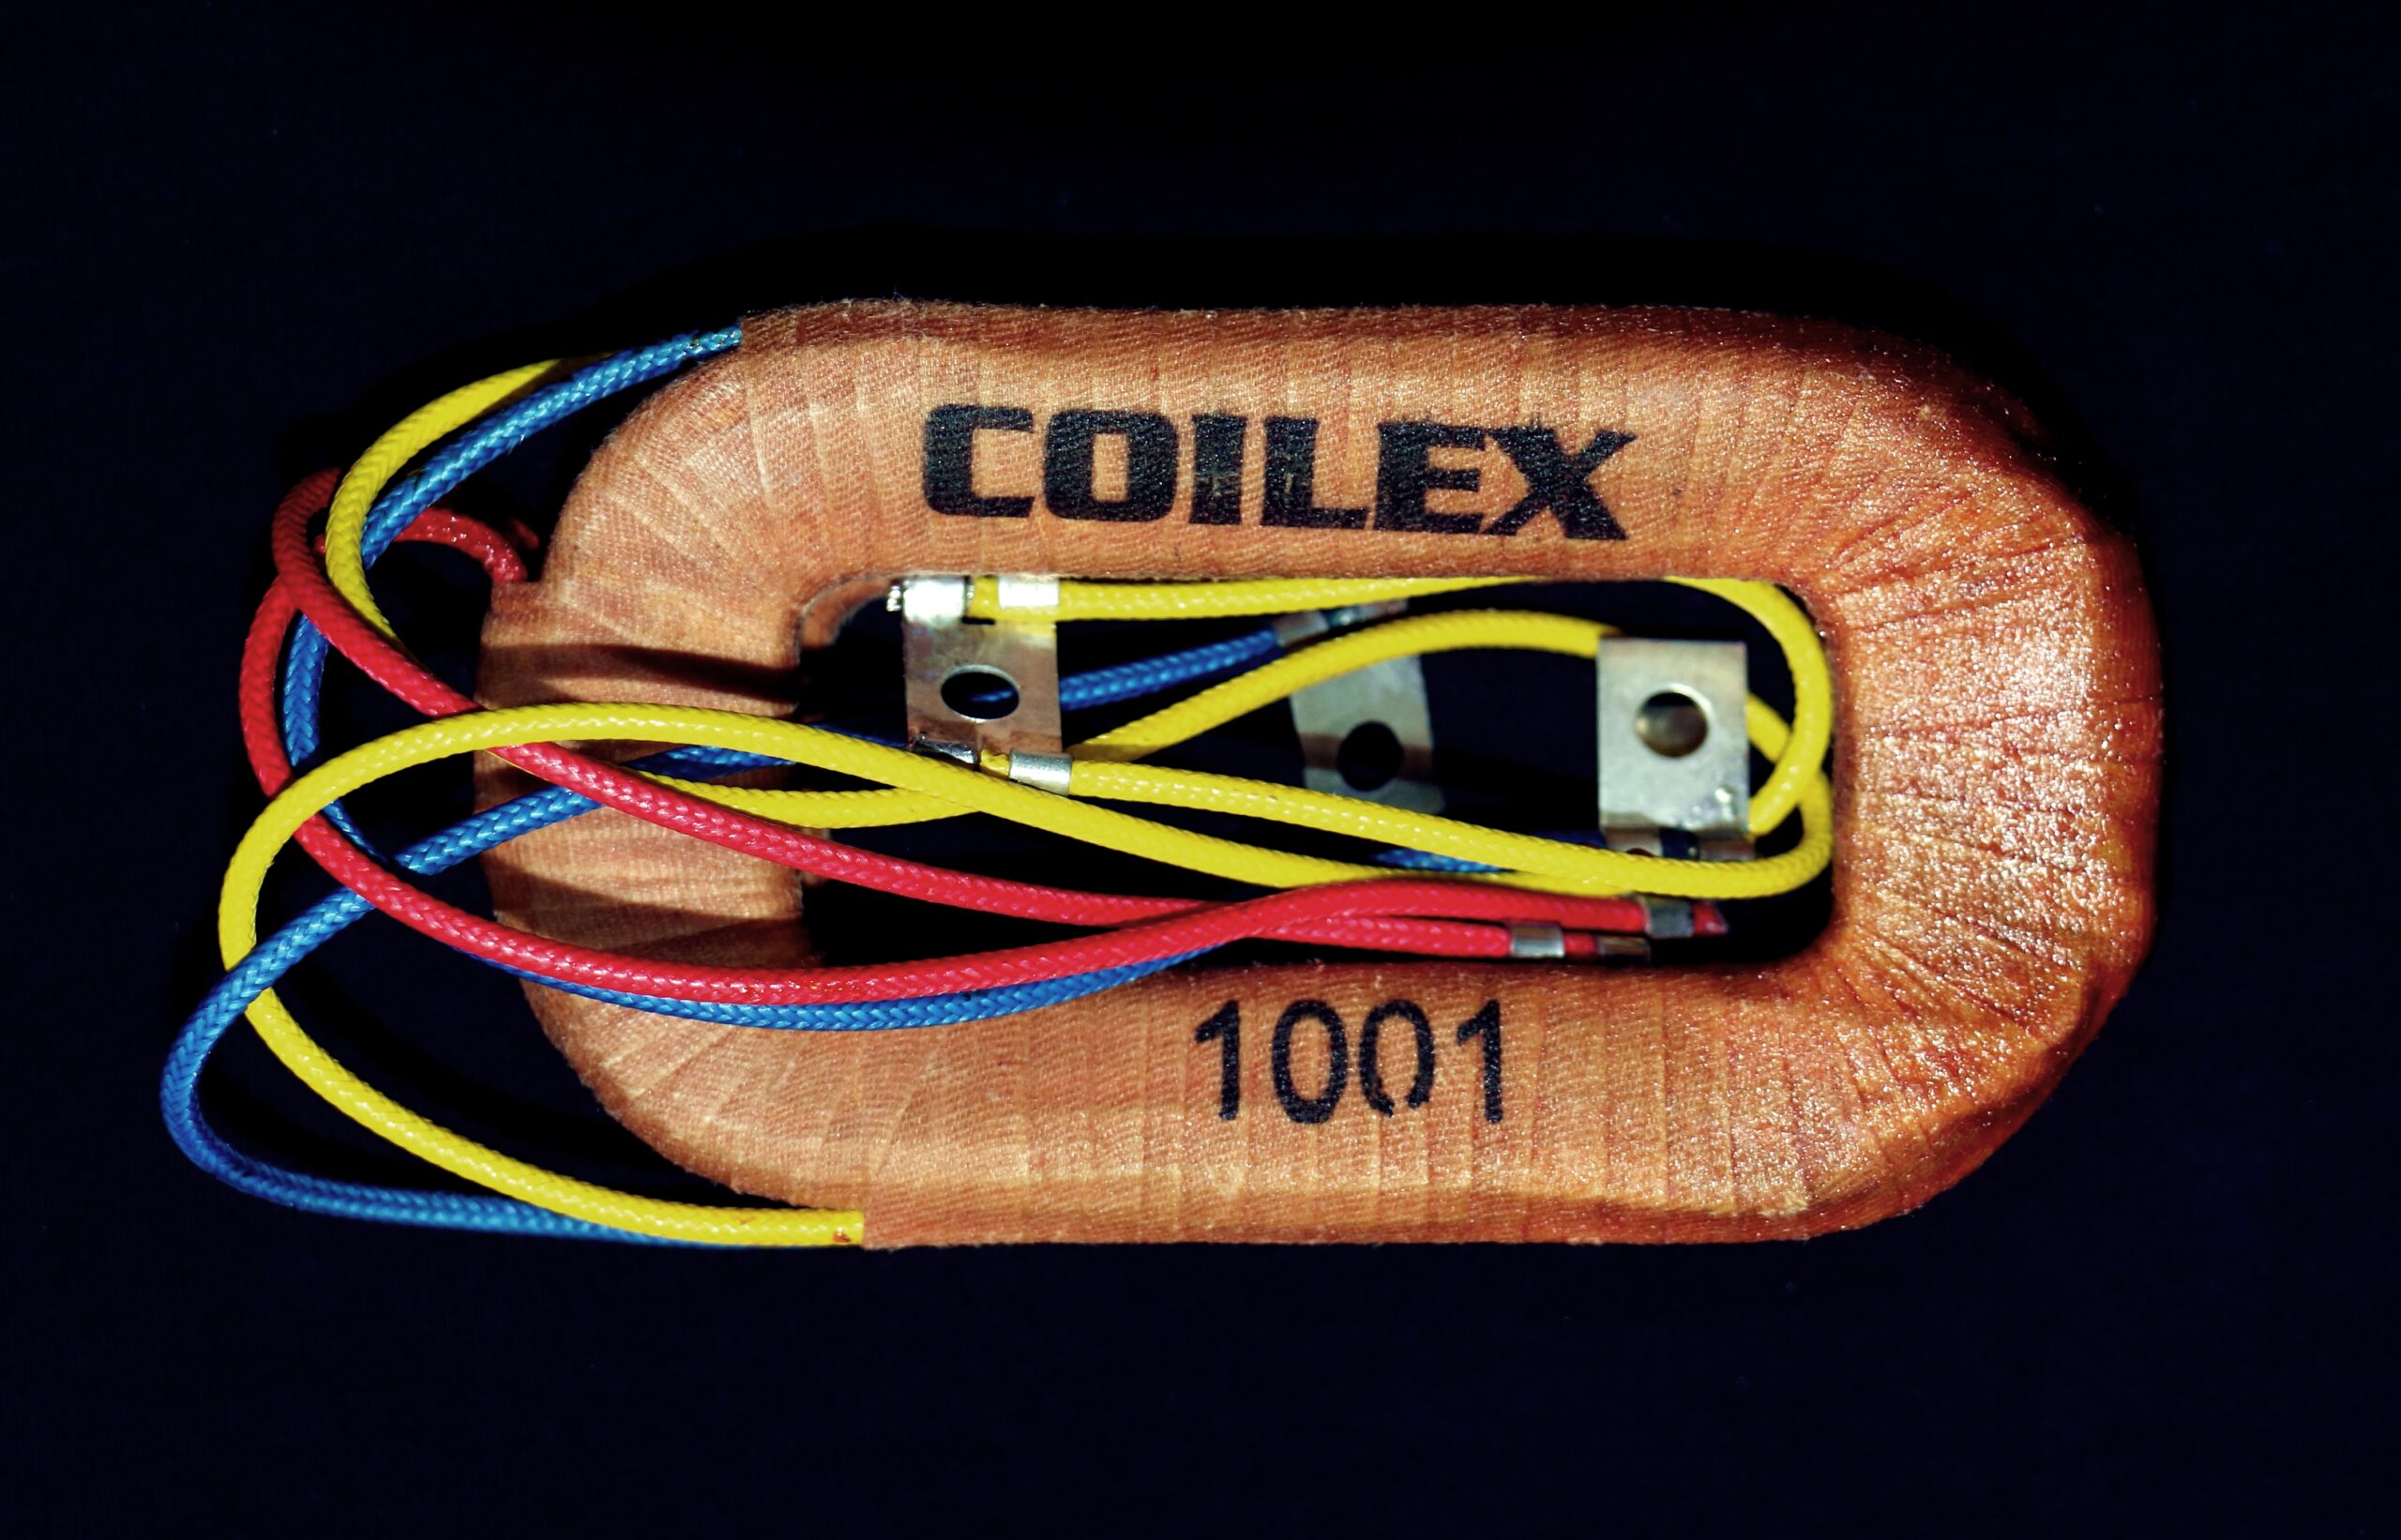 CX-1001